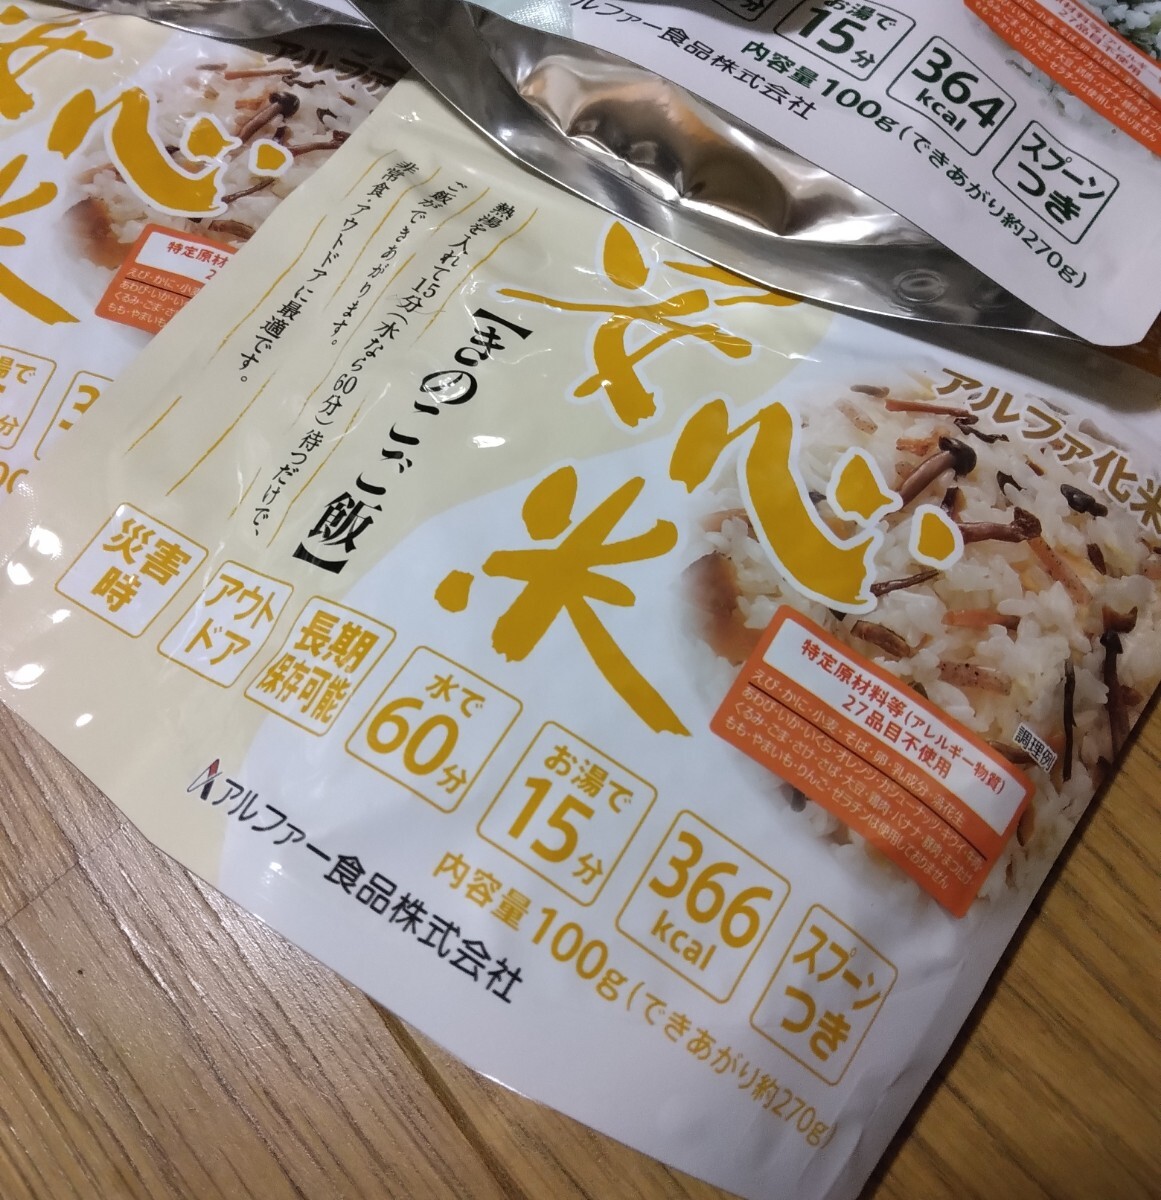 1袋定価410円 新品 安心米 アルファ化米わかめご飯ときのこご飯6食セットの画像2